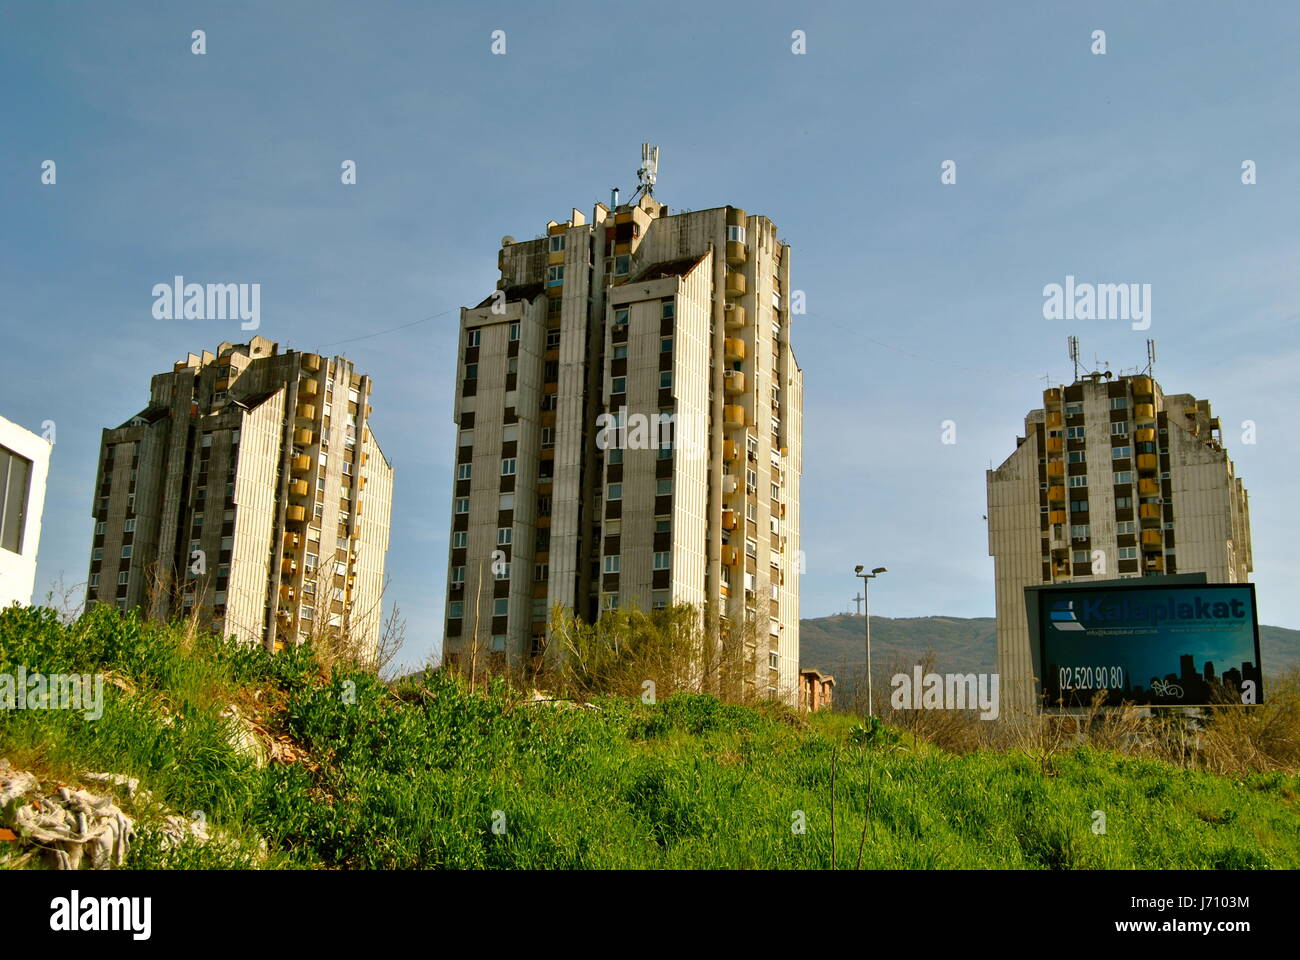 Communist housing blocks, Skopje, Macedonia Stock Photo